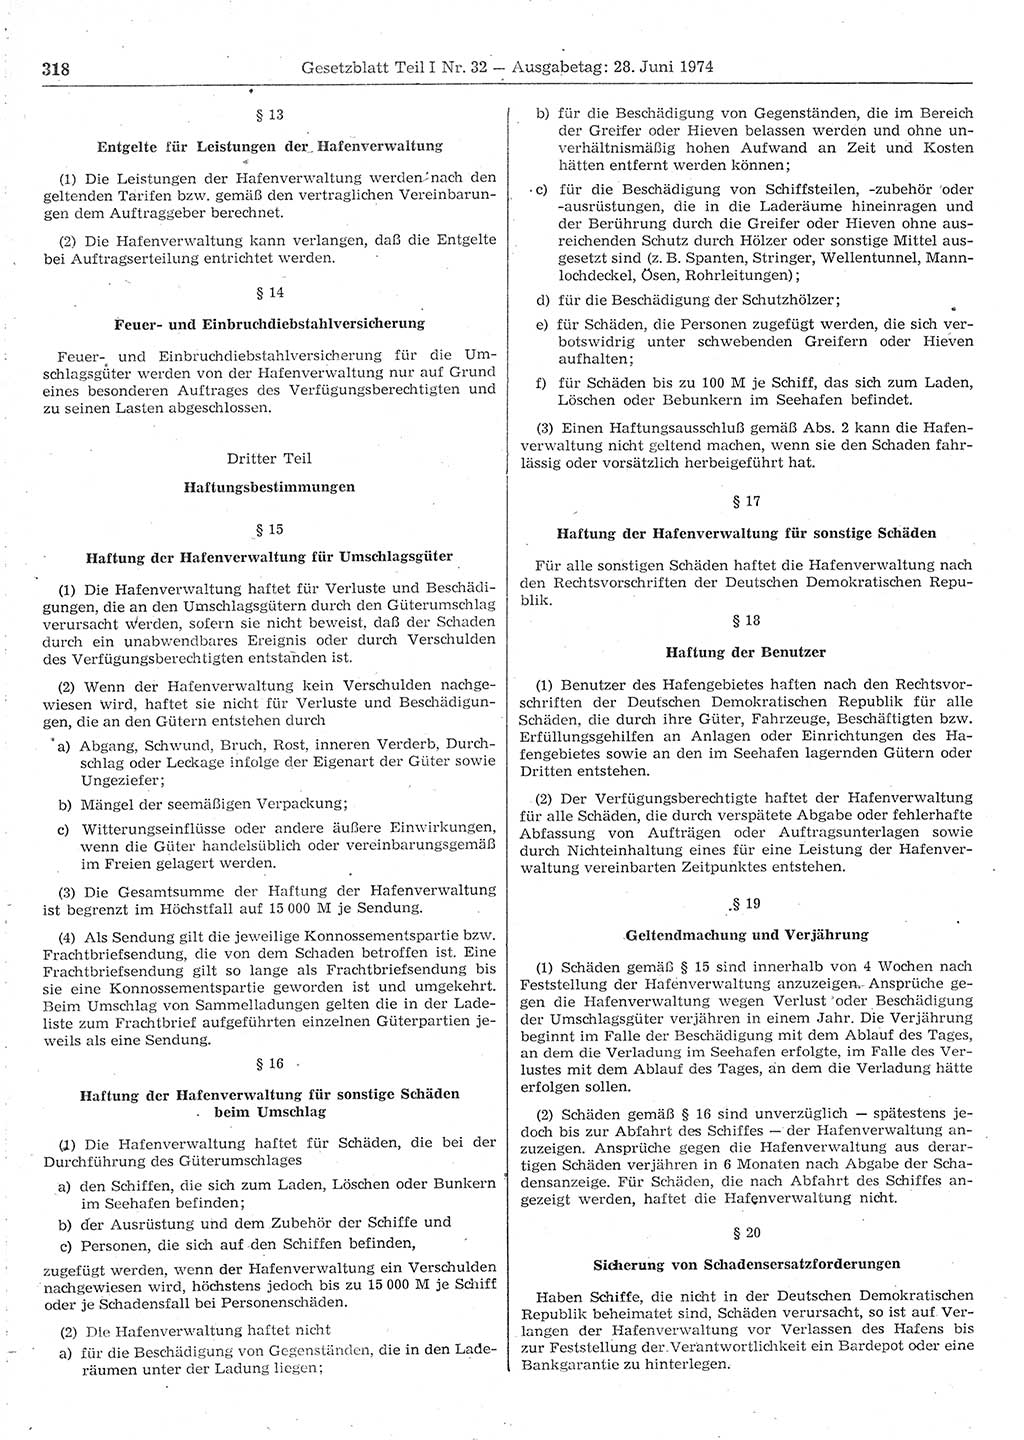 Gesetzblatt (GBl.) der Deutschen Demokratischen Republik (DDR) Teil Ⅰ 1974, Seite 318 (GBl. DDR Ⅰ 1974, S. 318)